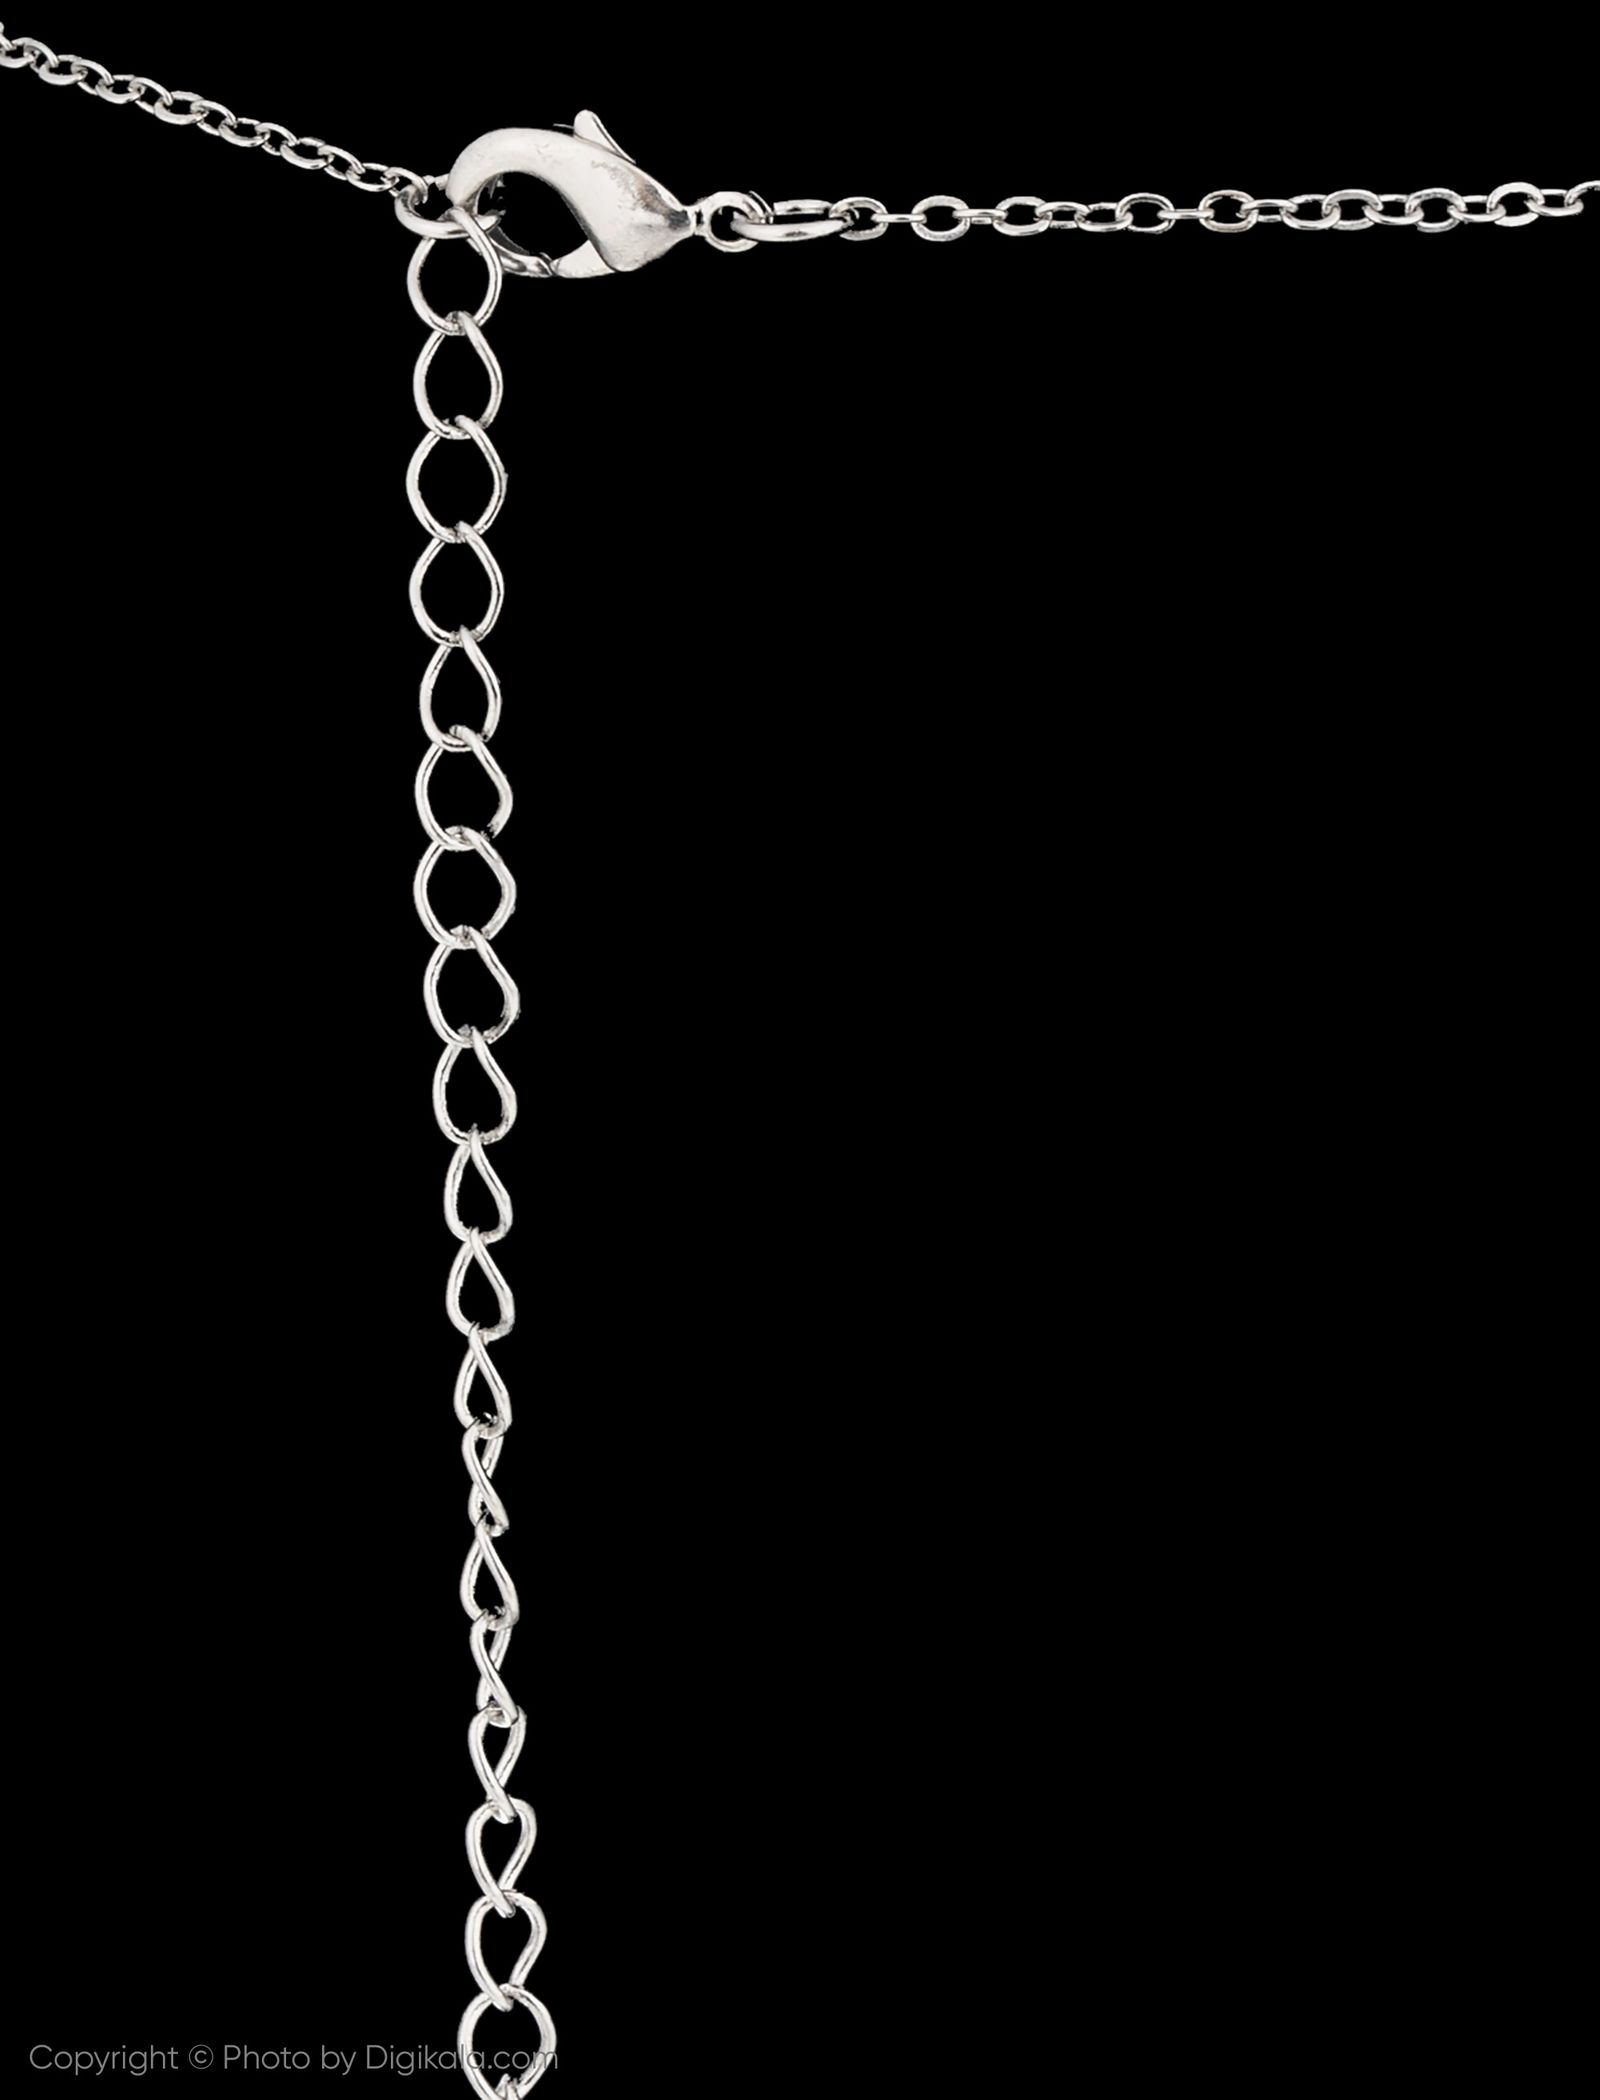 گردنبند زنانه اسپرینگ فیلد مدل 8453721-GREYS - نقره ای - 4